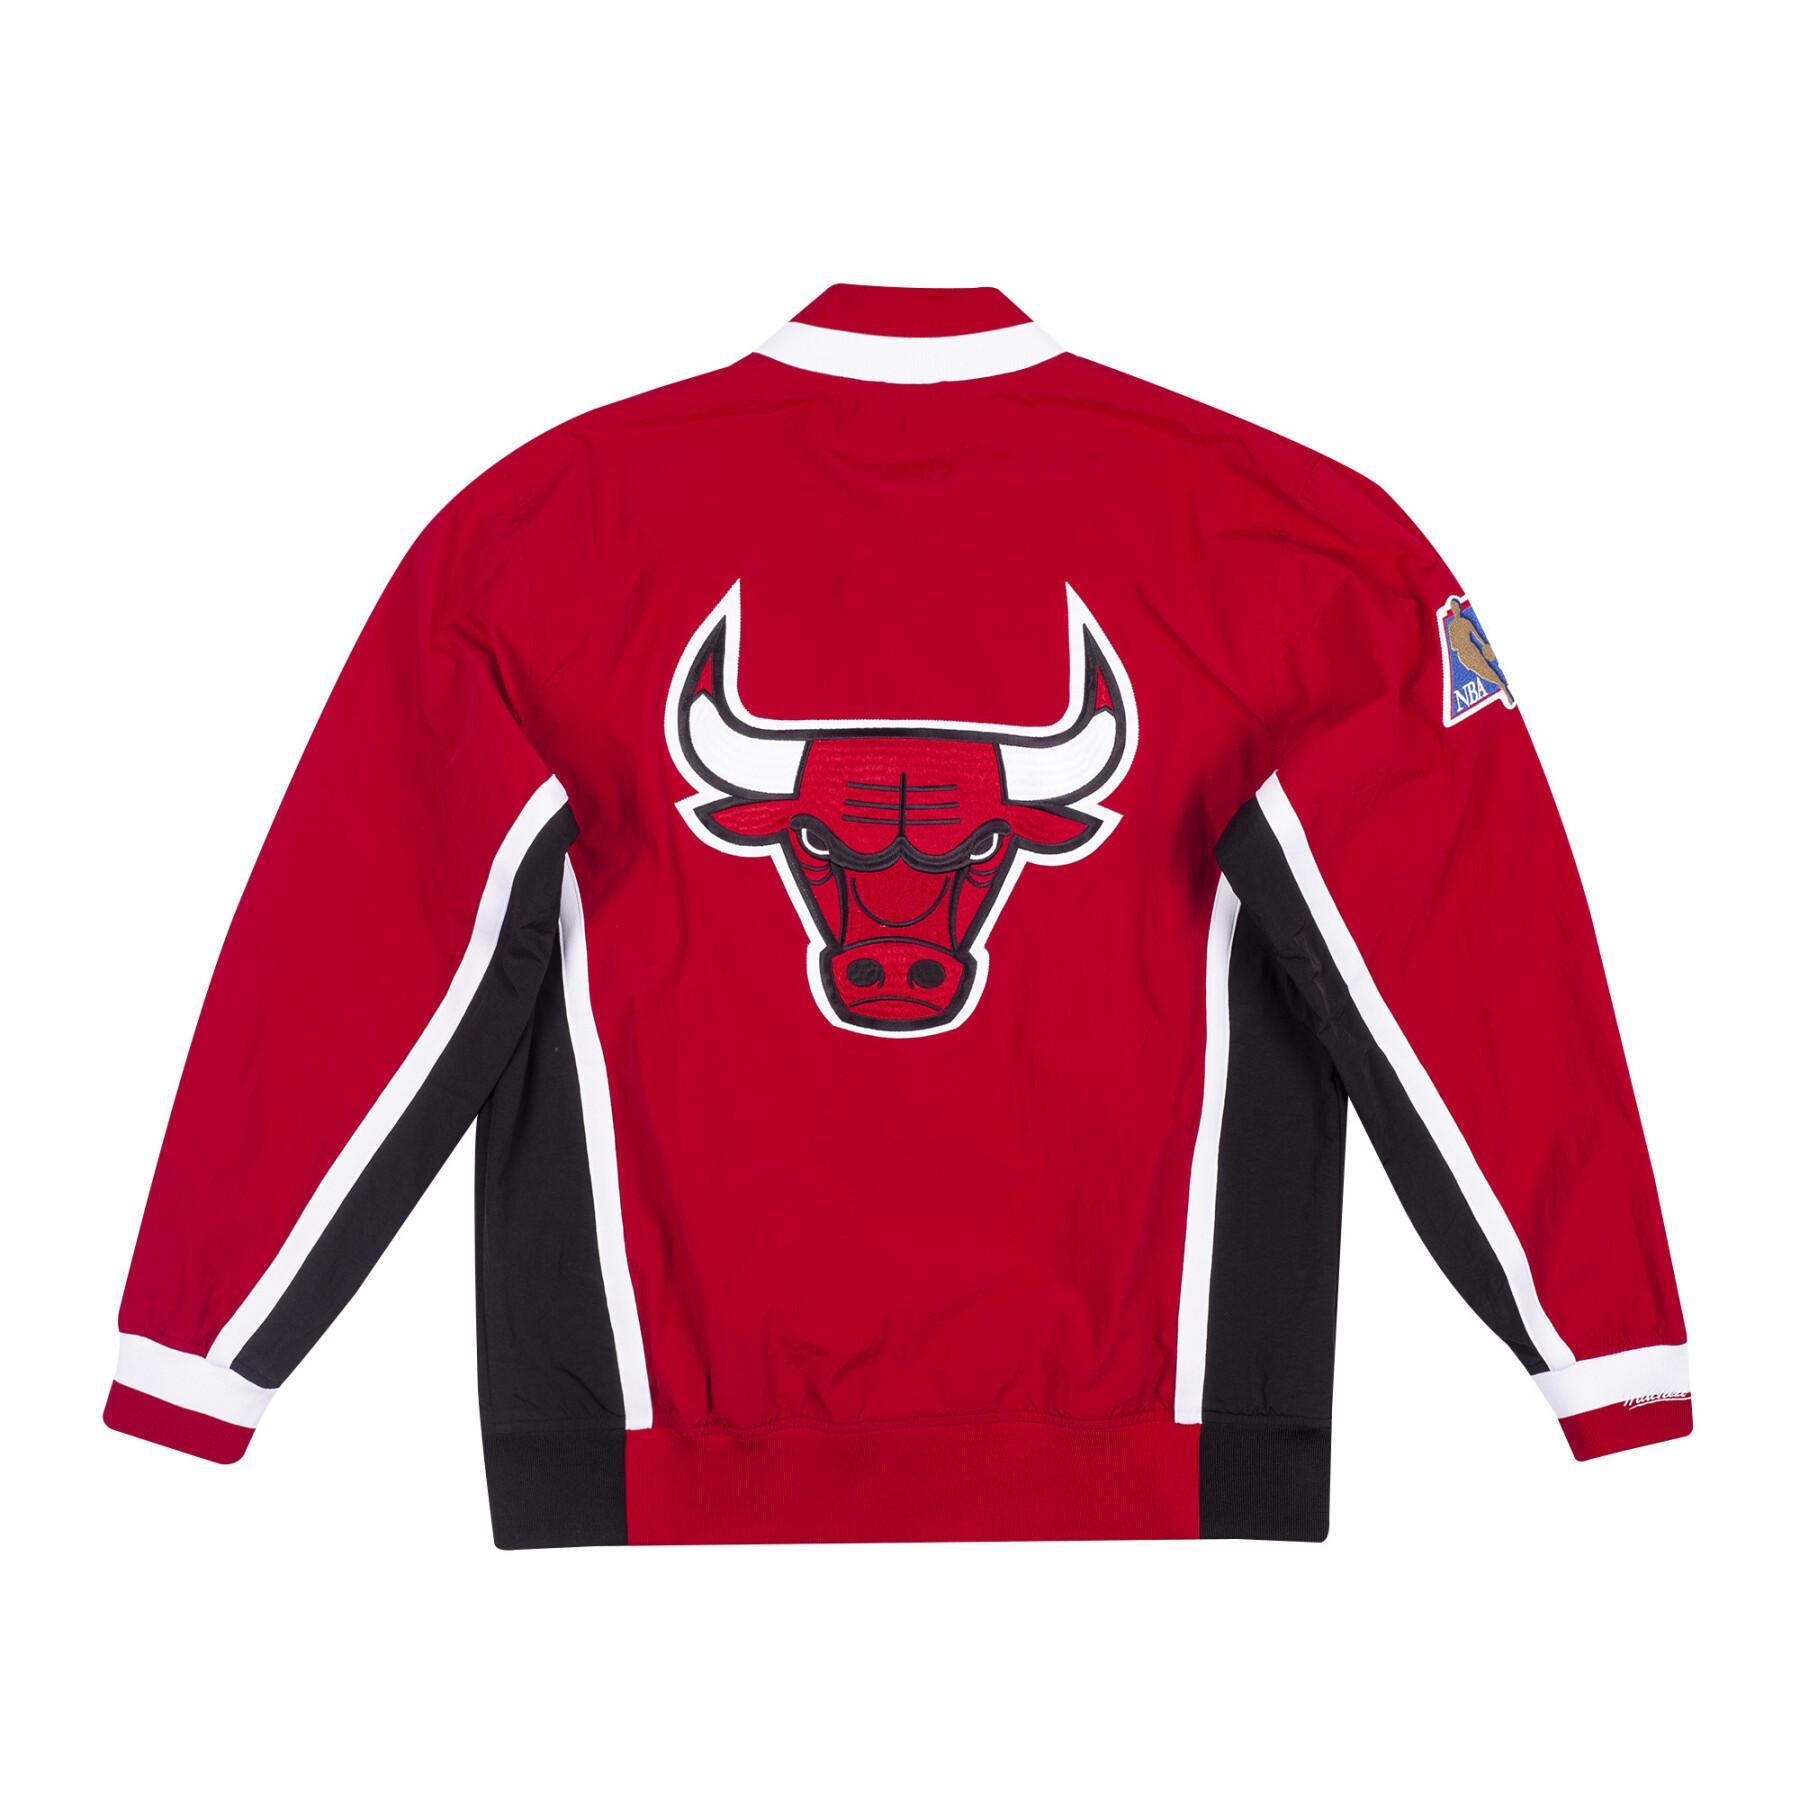 Kurtka Chicago Bulls NBA Authentic 1996